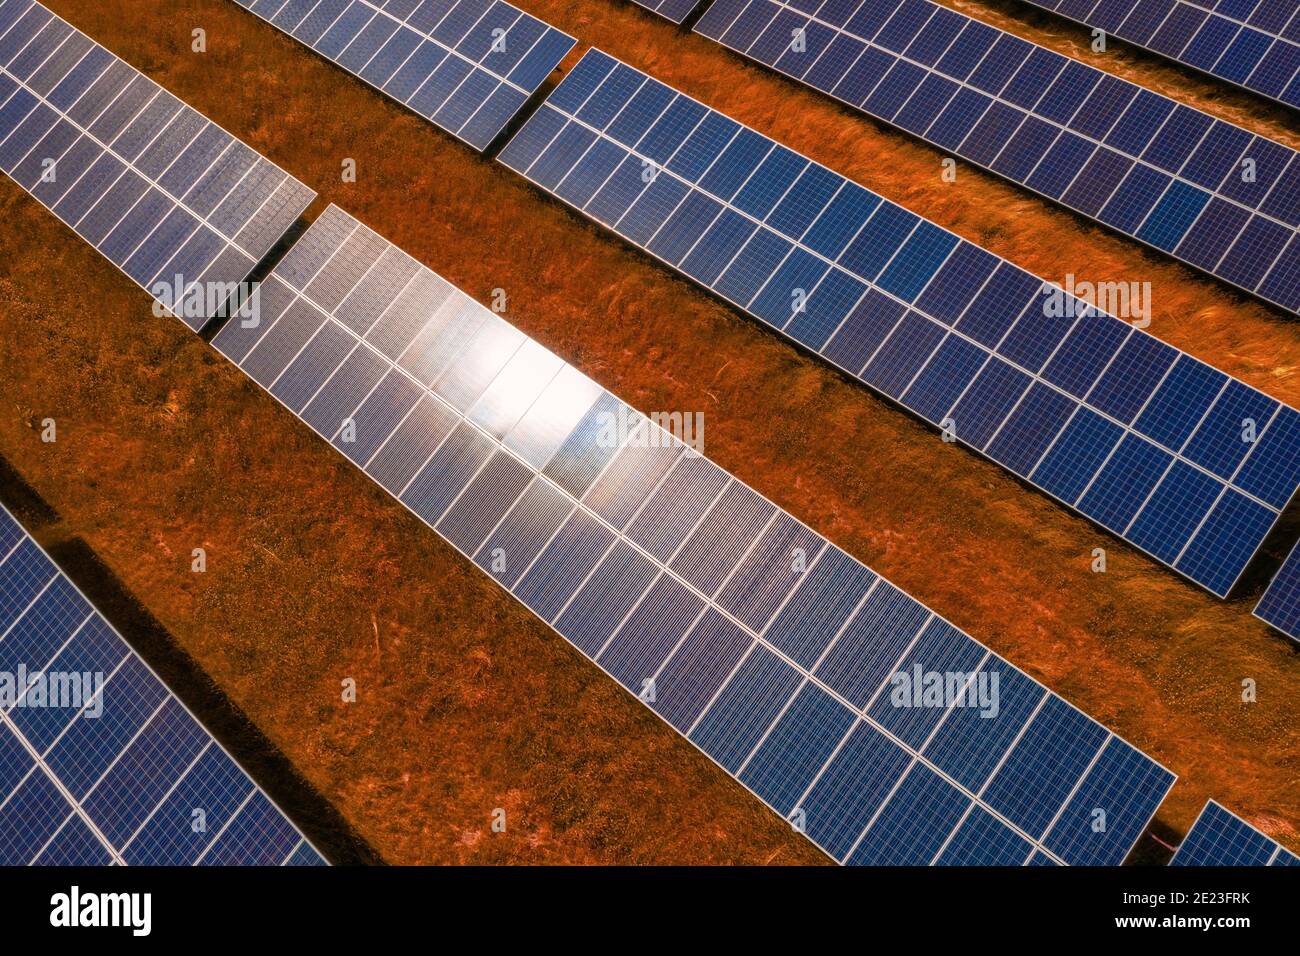 Die kreative Darstellung des Solarpanel-Arrays Lapeer, Michigan, zeigt Investitionen in nachhaltige, erneuerbare Energien auf Stockfoto